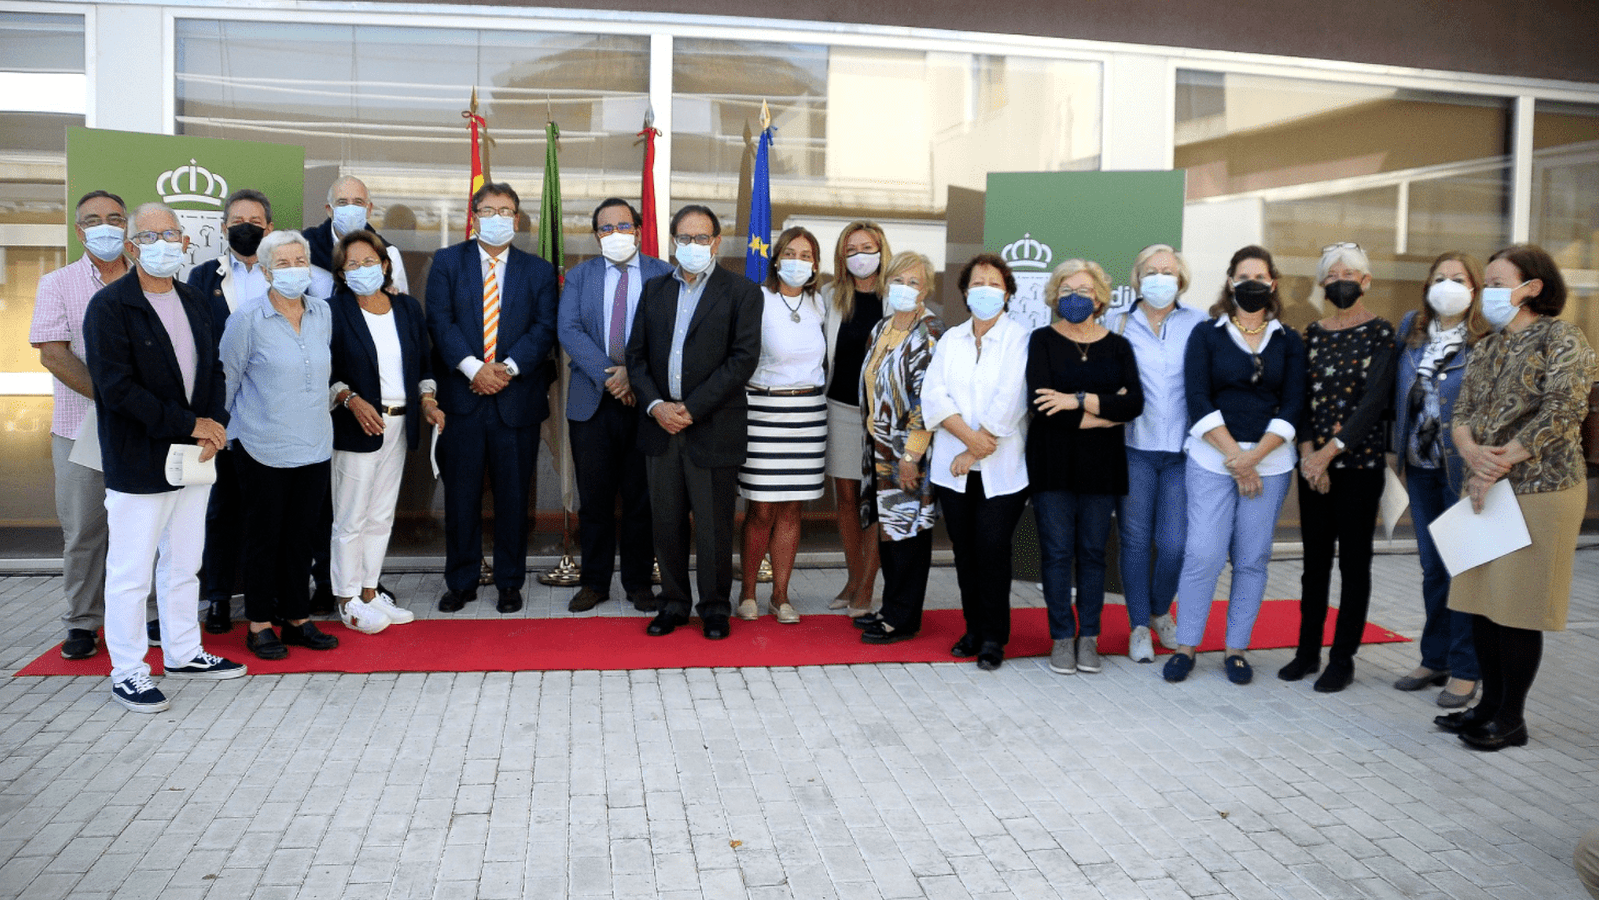 La Universidad de Mayores de Boadilla arranca su segundo año con la vuelta a la presencialidad